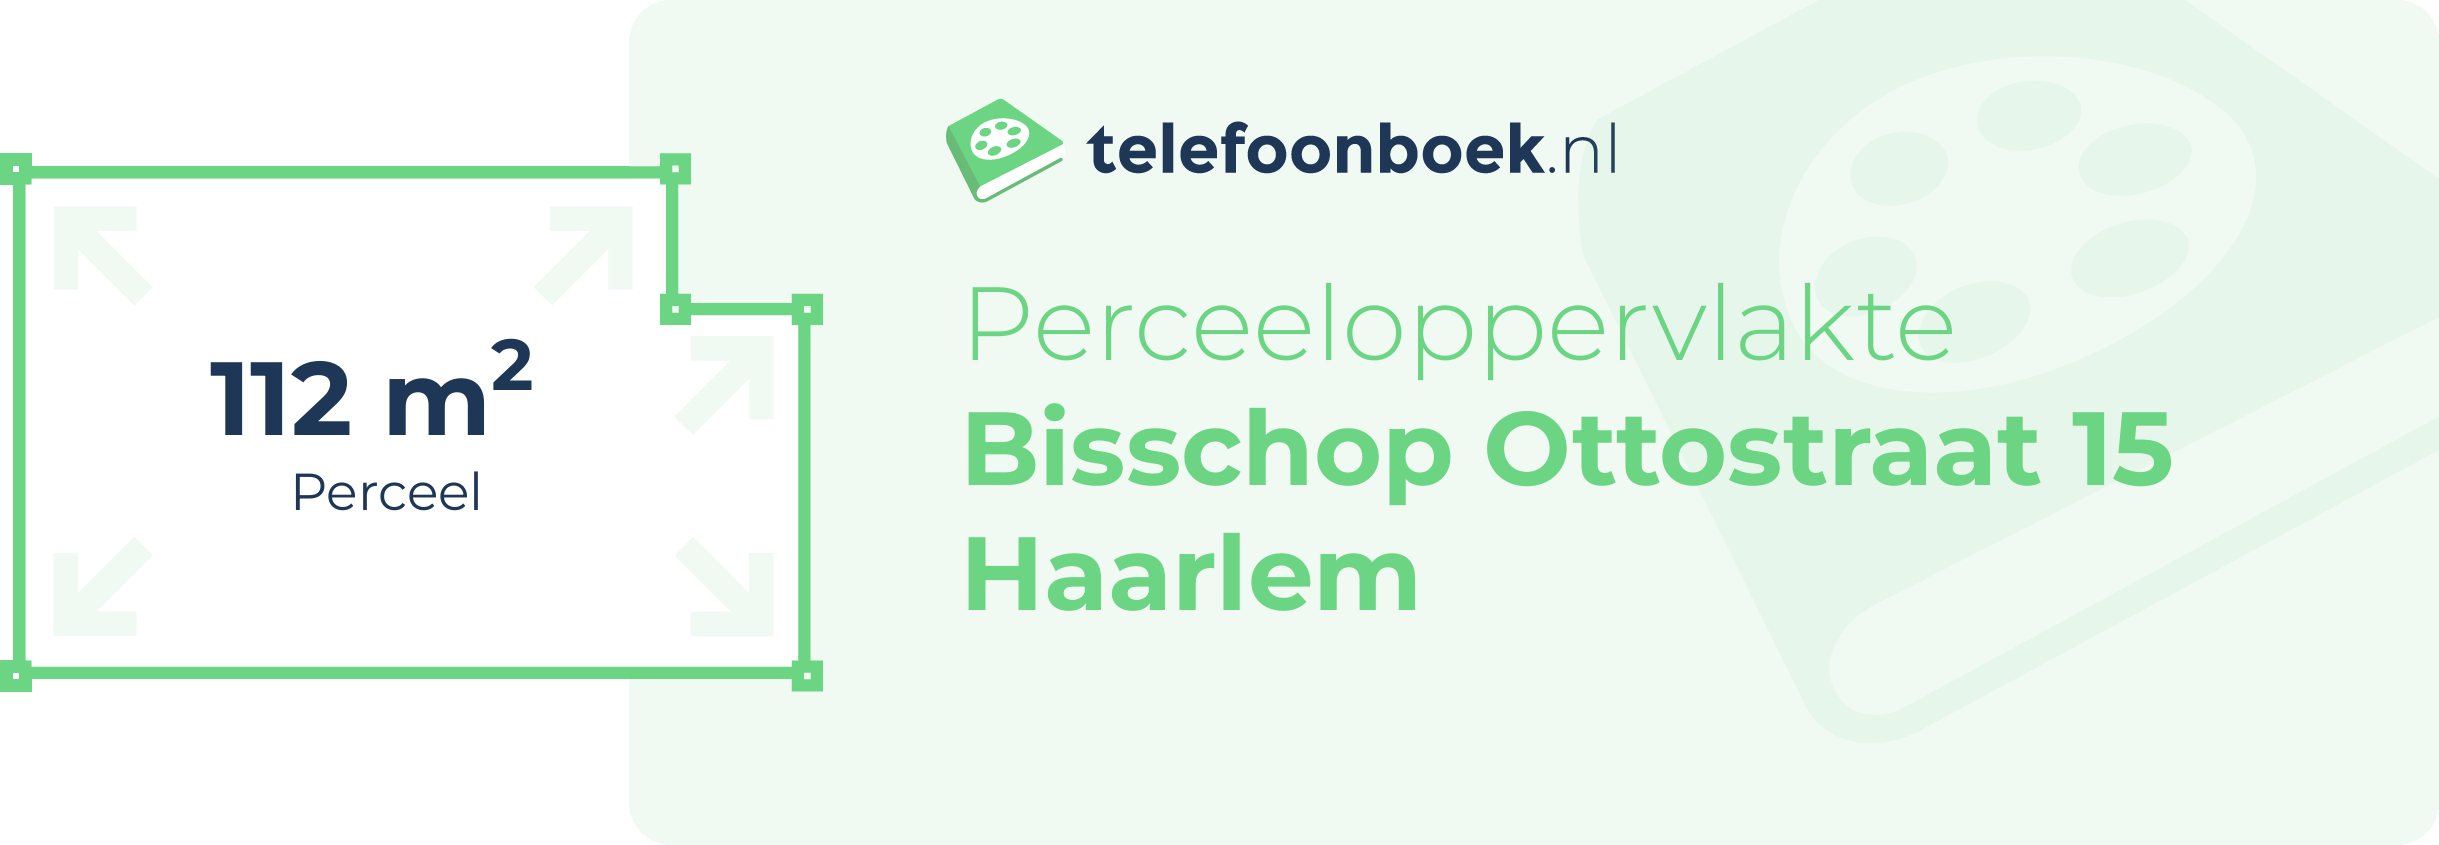 Perceeloppervlakte Bisschop Ottostraat 15 Haarlem